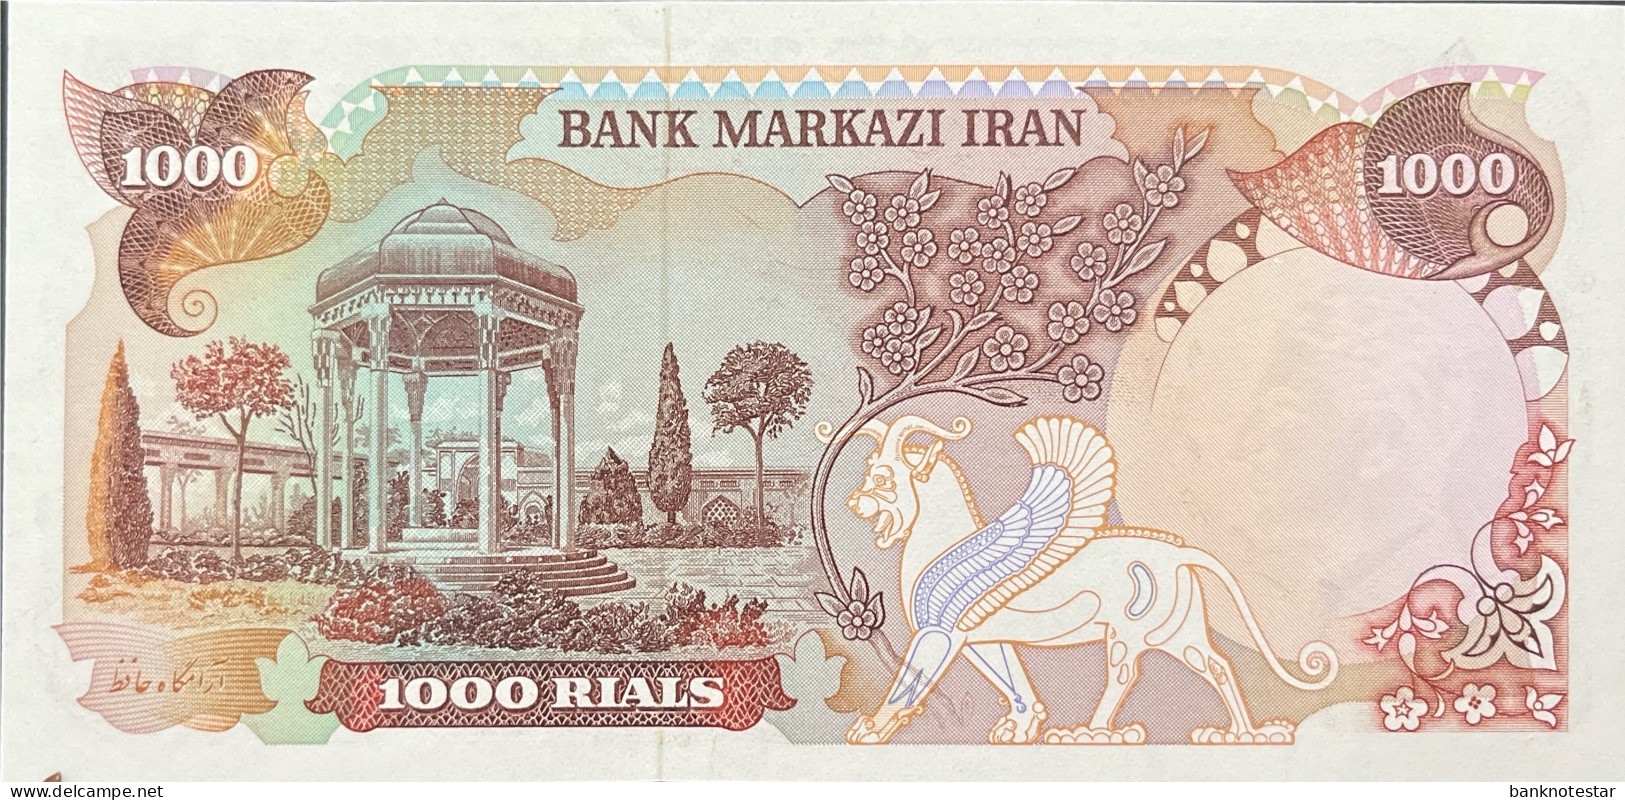 Iran 1.000 Rials, P-105c (1974) - UNC - Iran